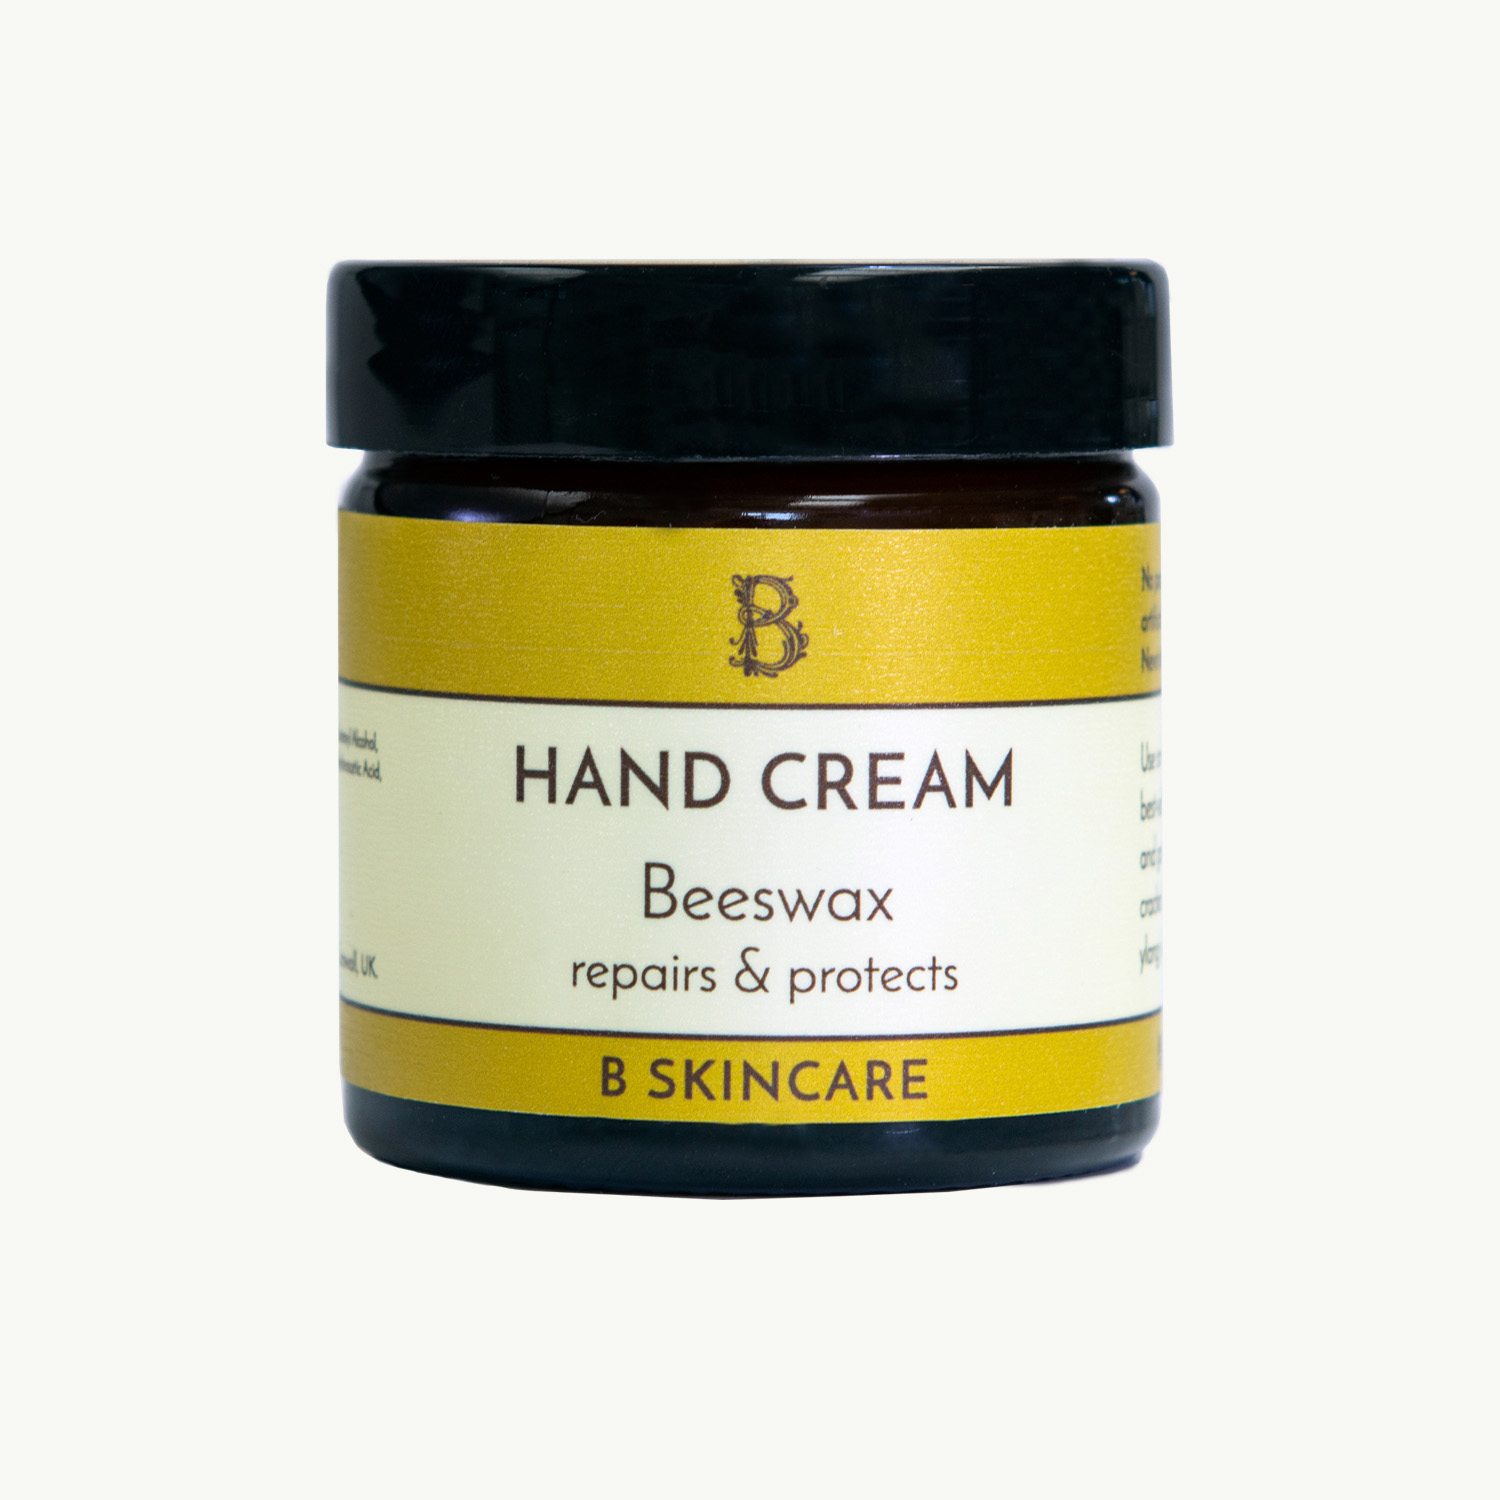 Hand Cream - Beeswax 60ml